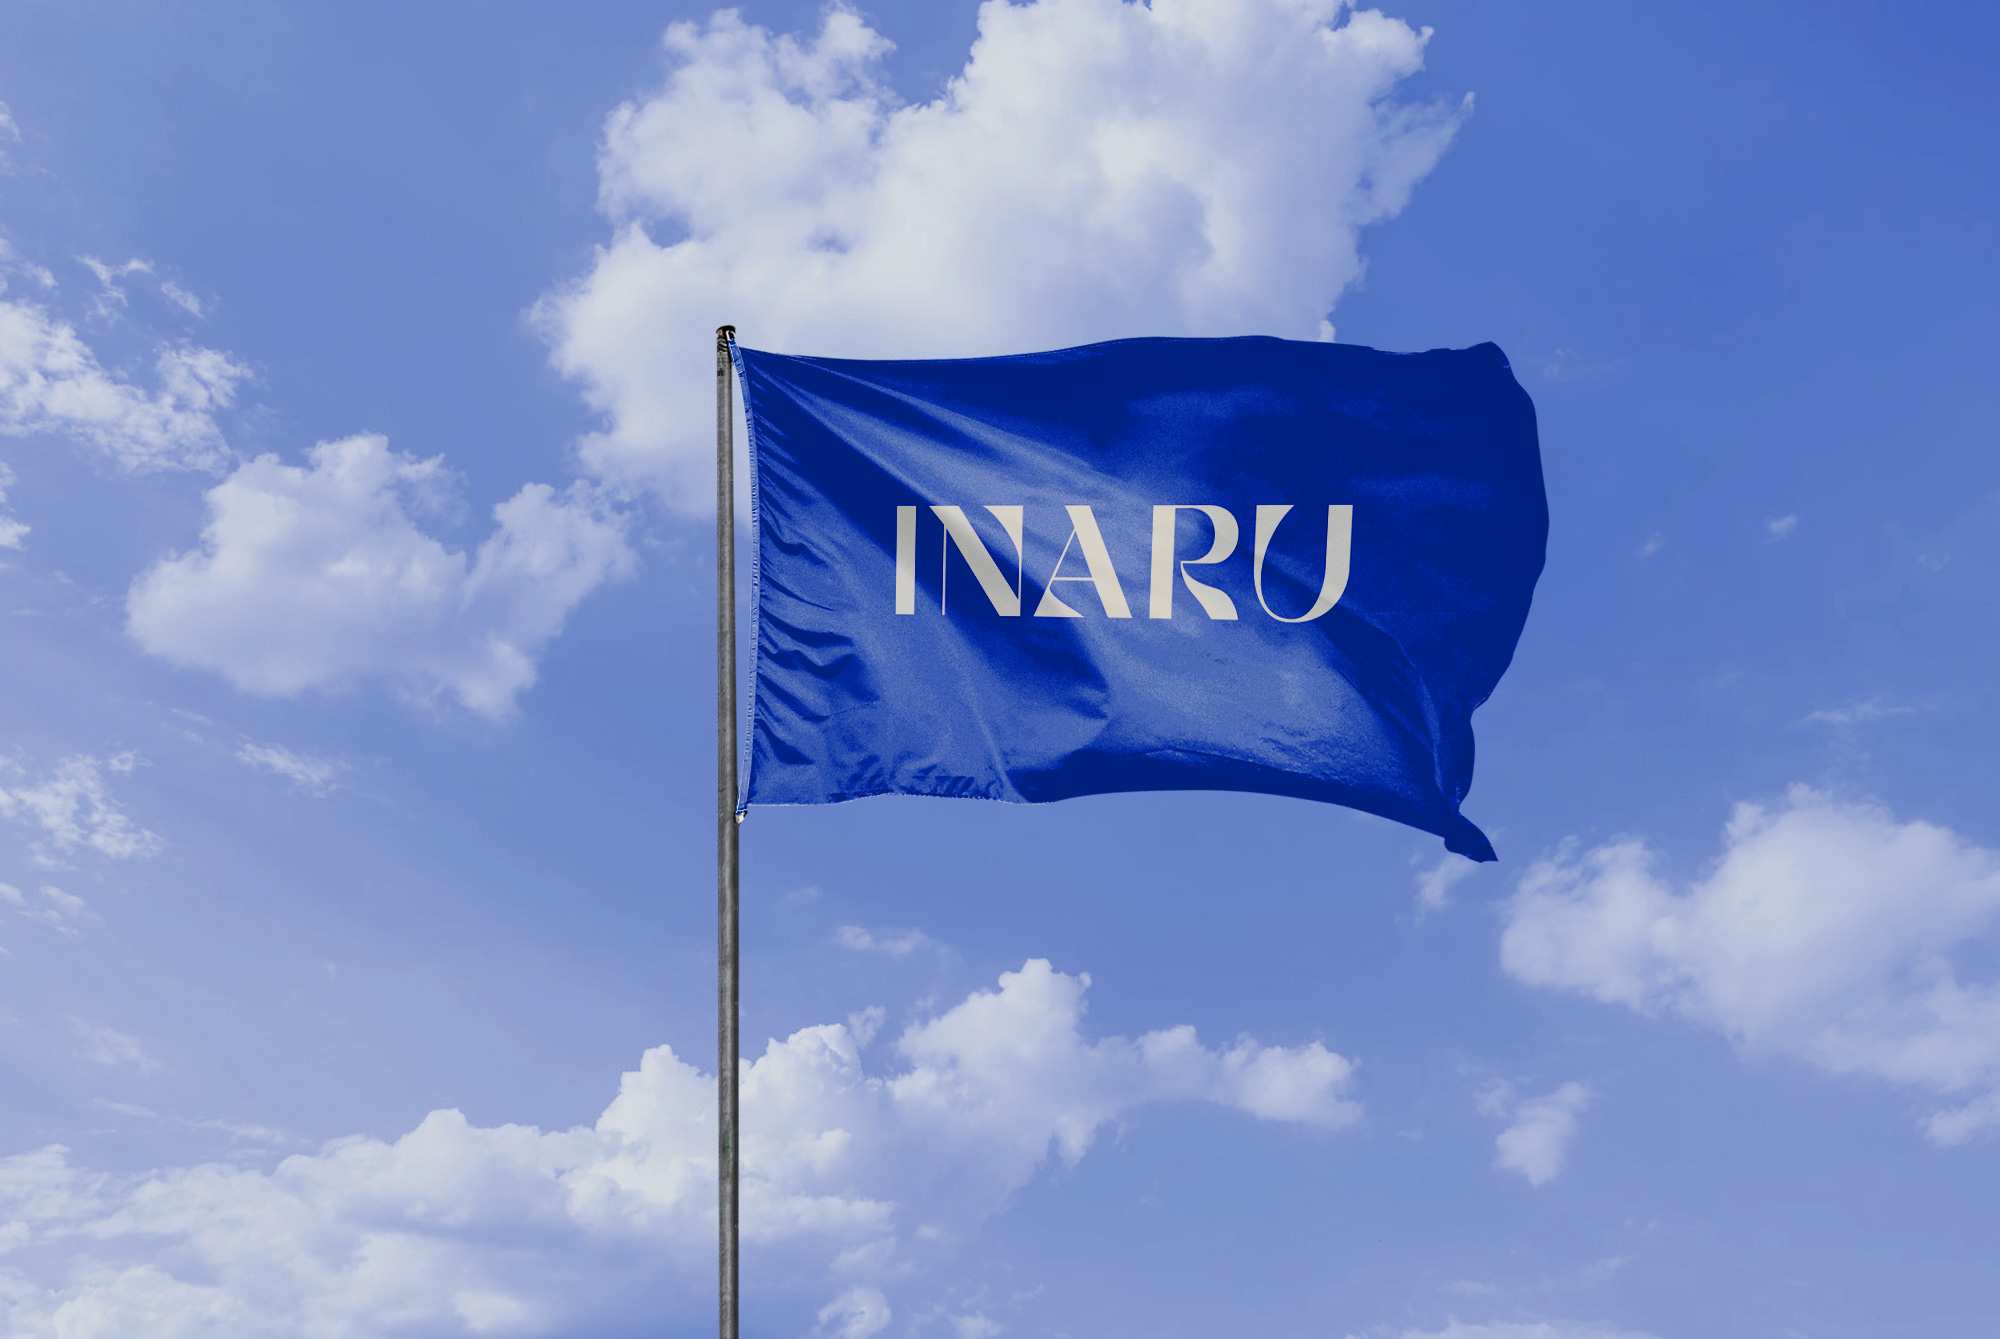 Inaru_flag_web